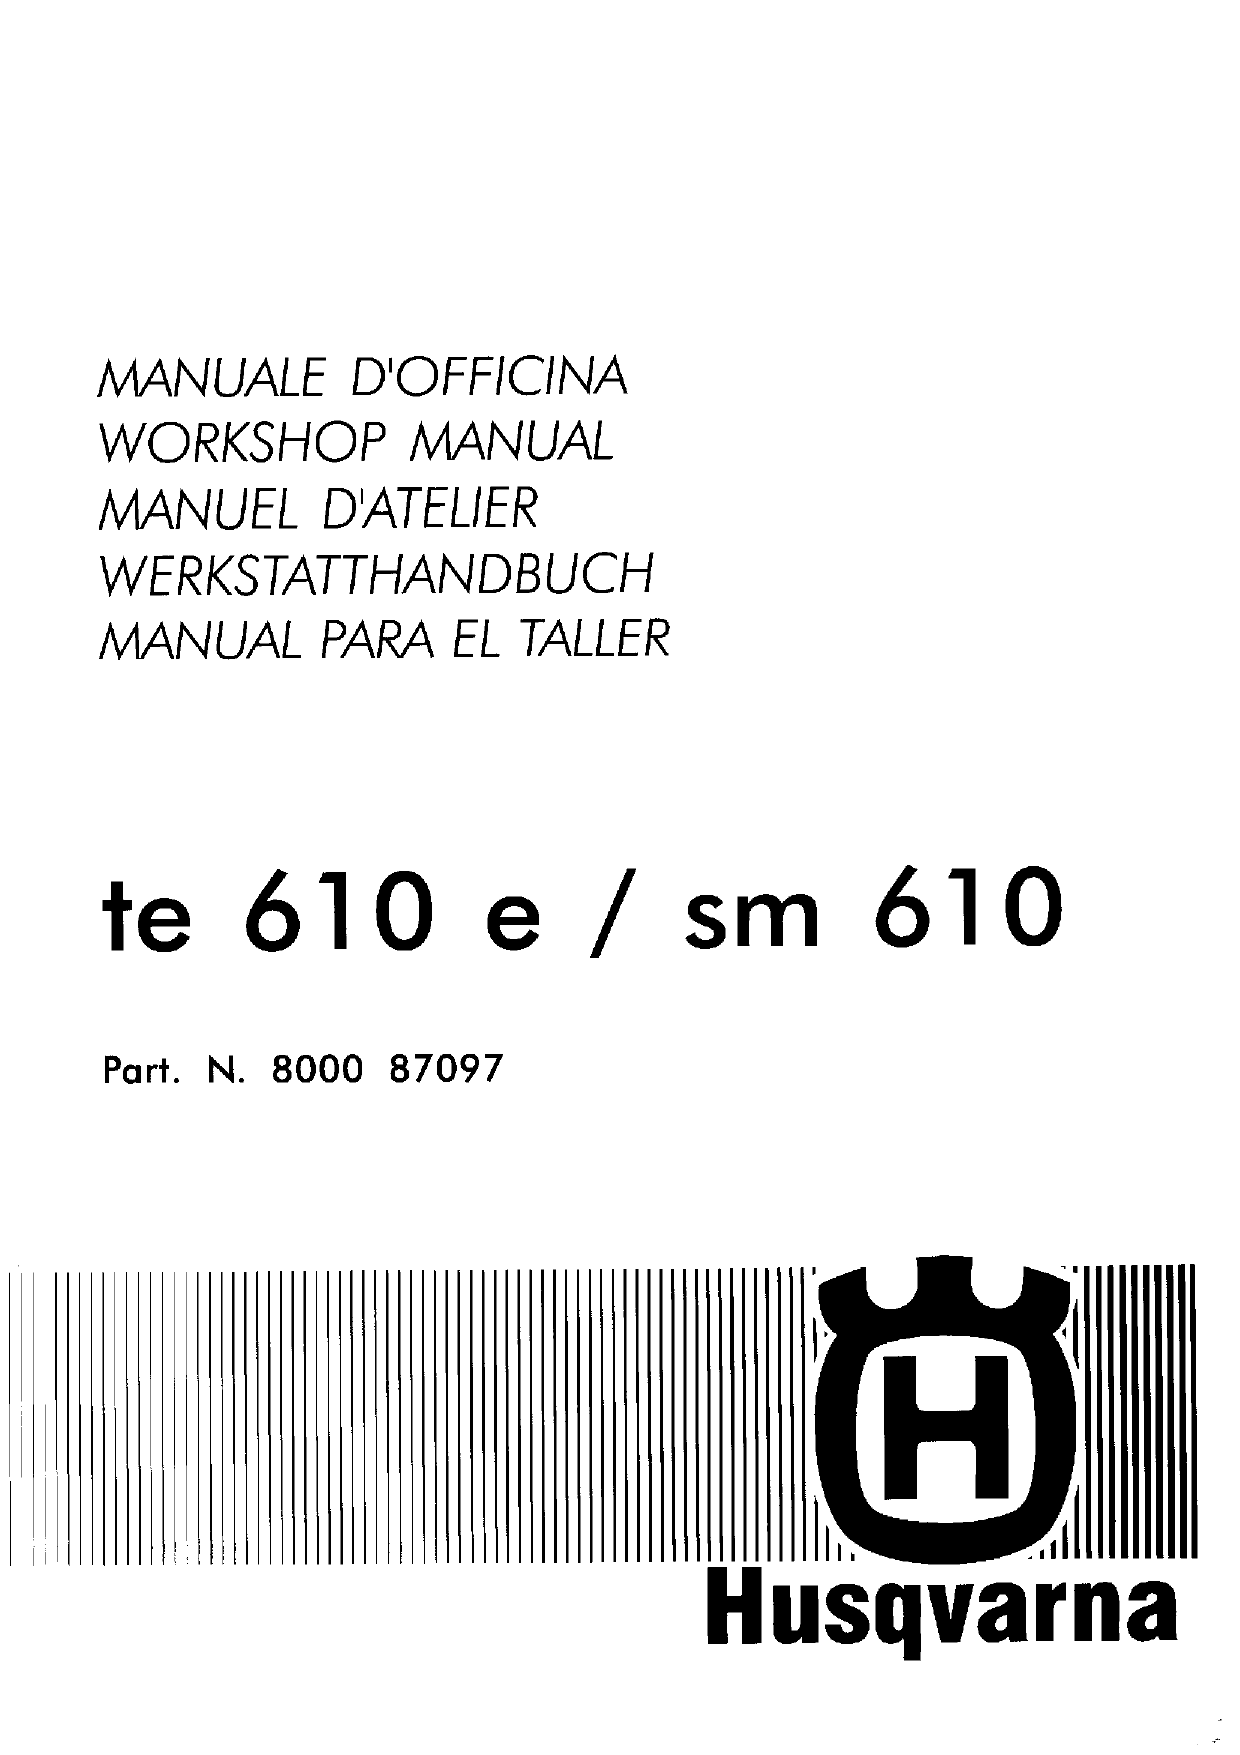 1998 Husqvarna TE610E, SM610 repair manual Preview image 1